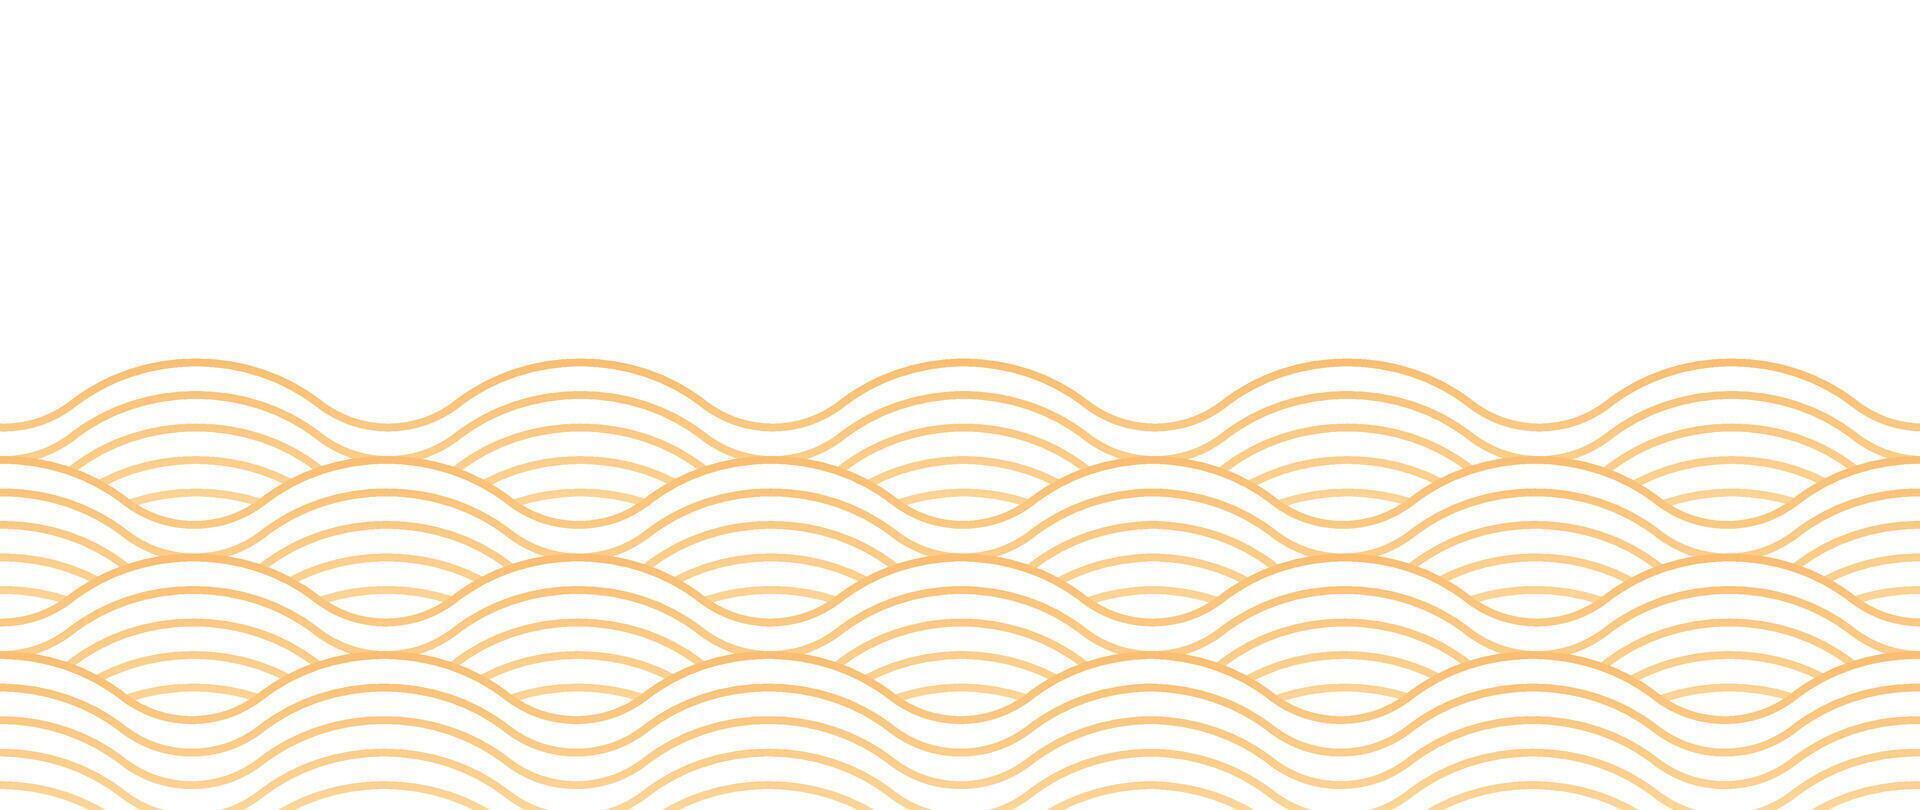 japanisch Gold Welle Hintergrund Vektor. Hintergrund Design mit Gold und Weiß nahtlos Ozean Welle Muster Hintergrund. modern Luxus orientalisch Illustration zum Abdeckung, Banner, Webseite, Dekor, Grenze. vektor